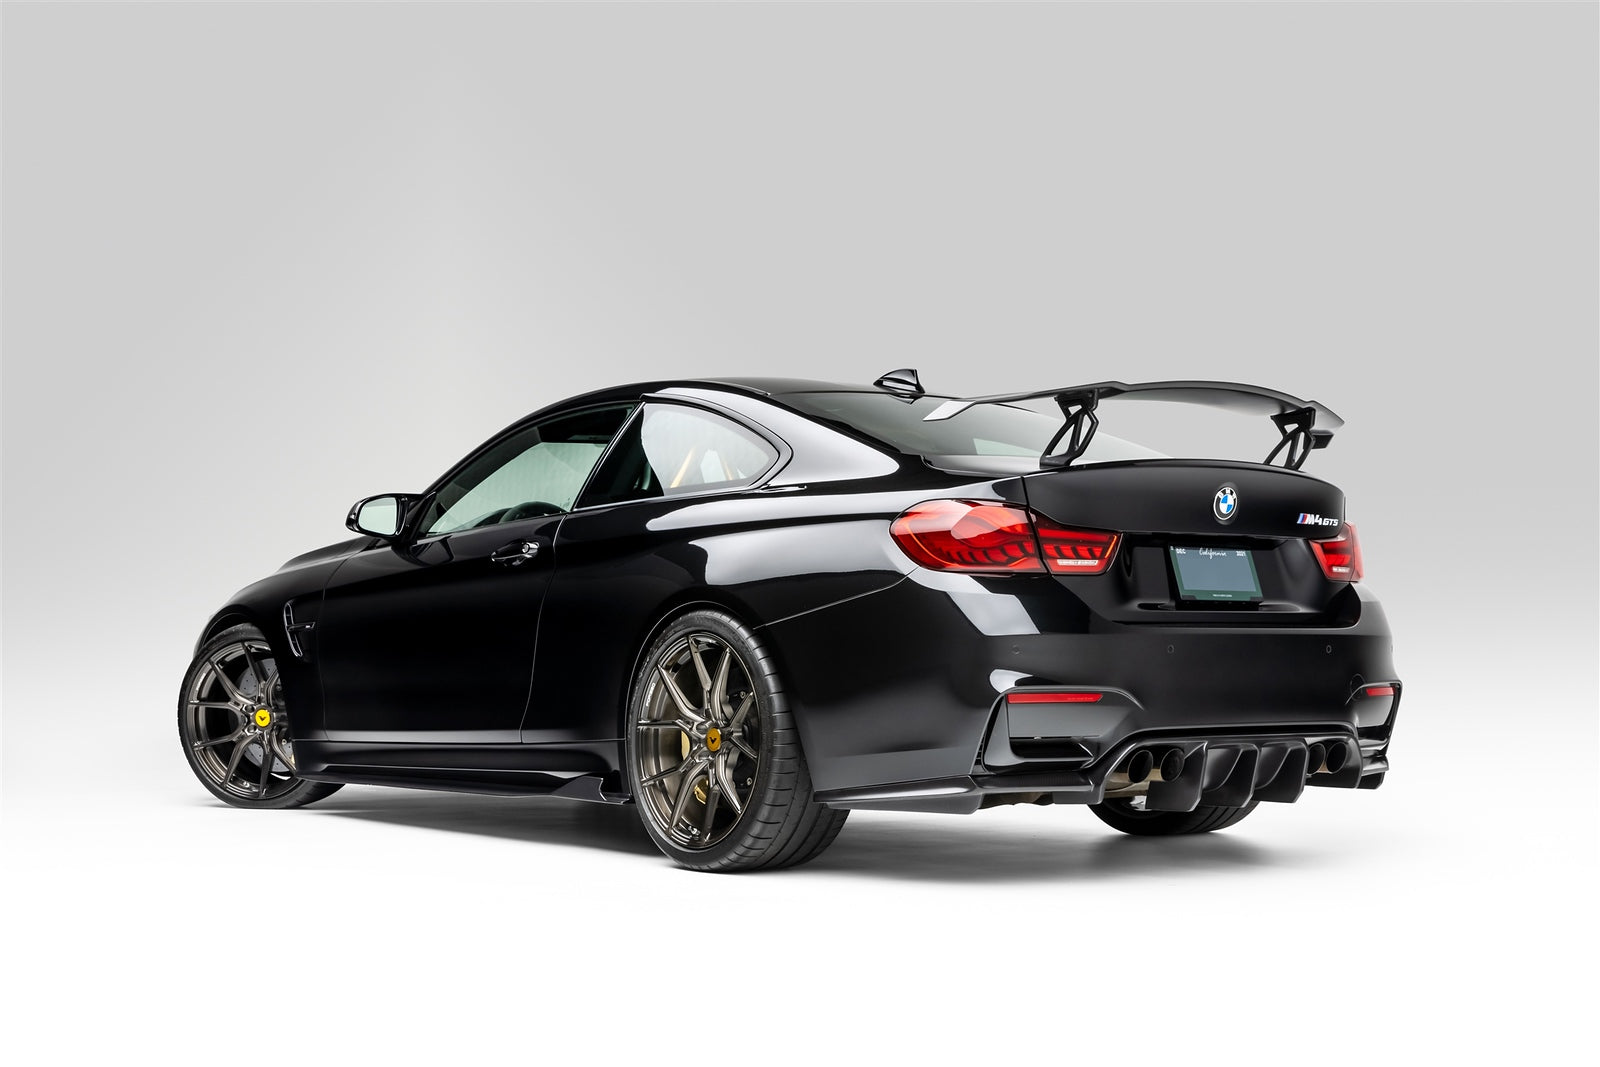 BMW F8X M3, M4 Carbon Fiber Front Spoiler